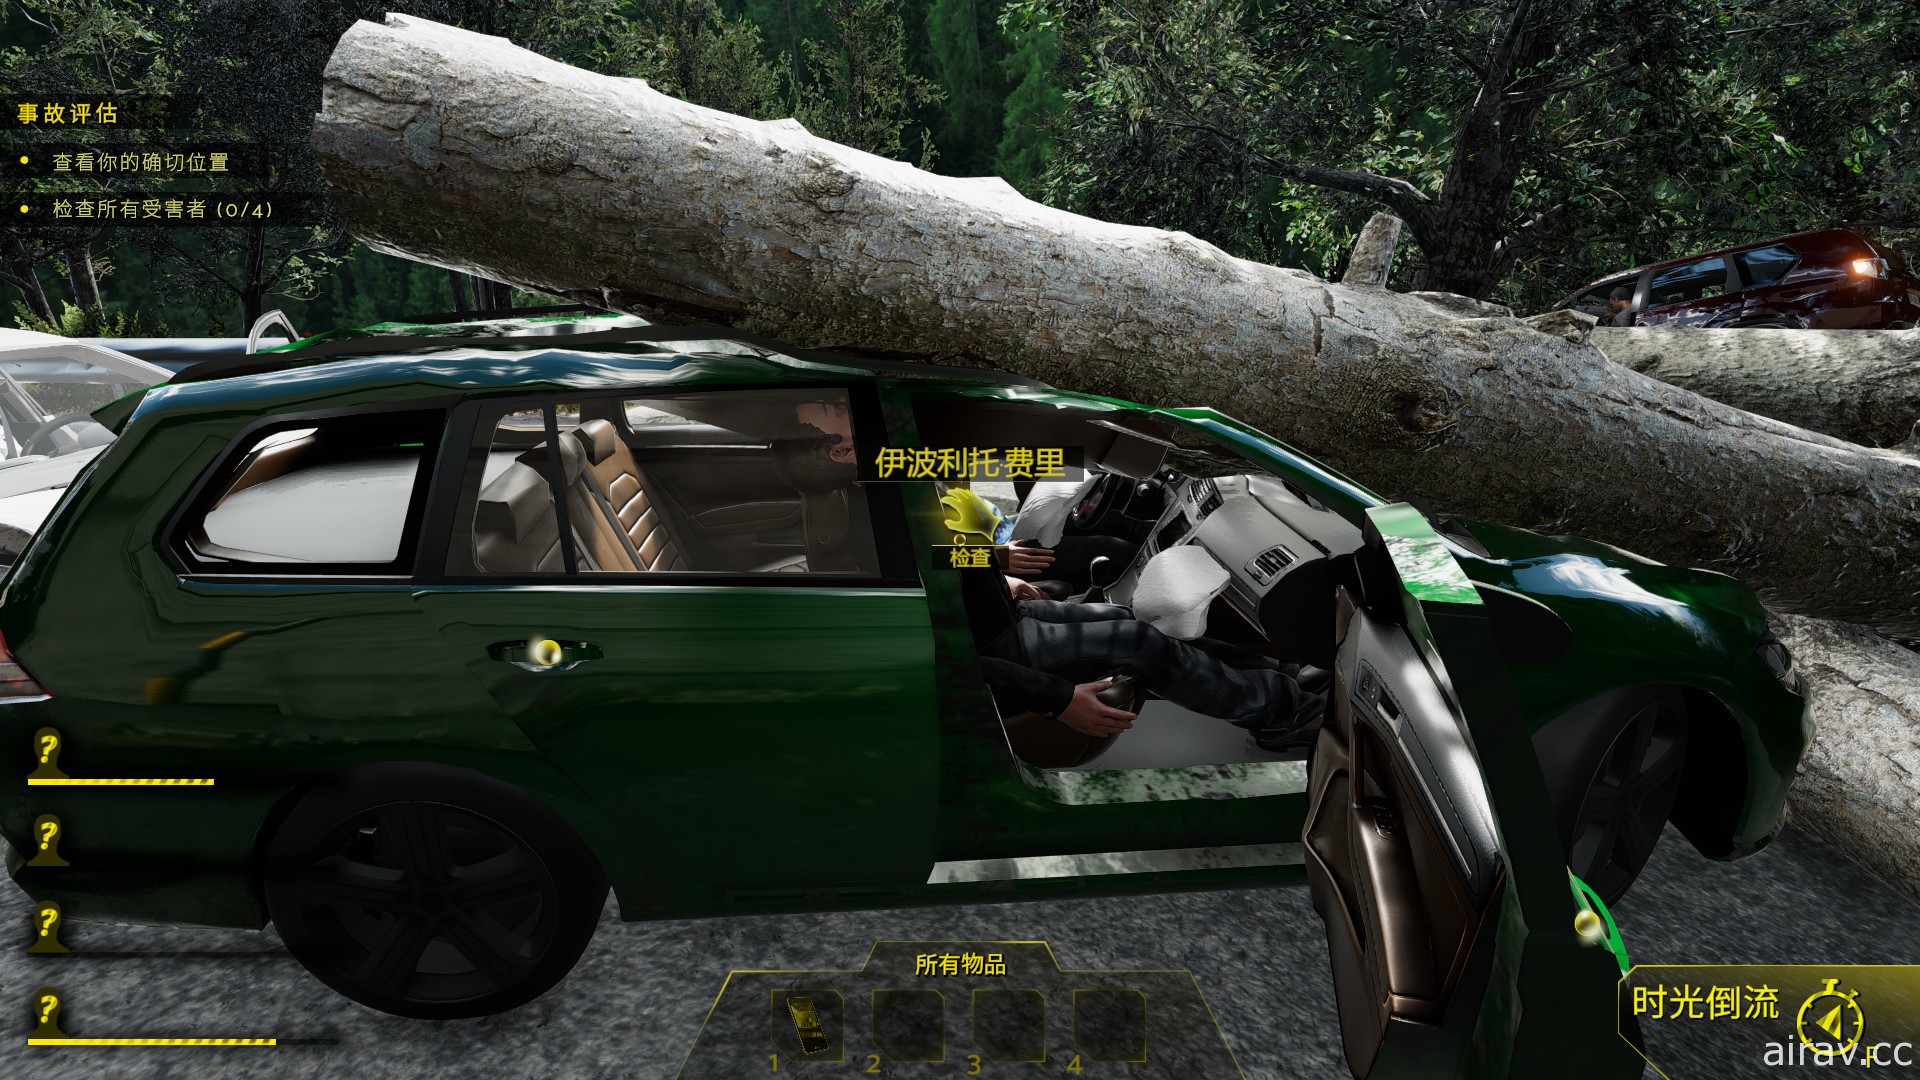 独立游戏新作《模拟车祸现场 Accident》展开抢先体验 救出伤患同时找事故原因